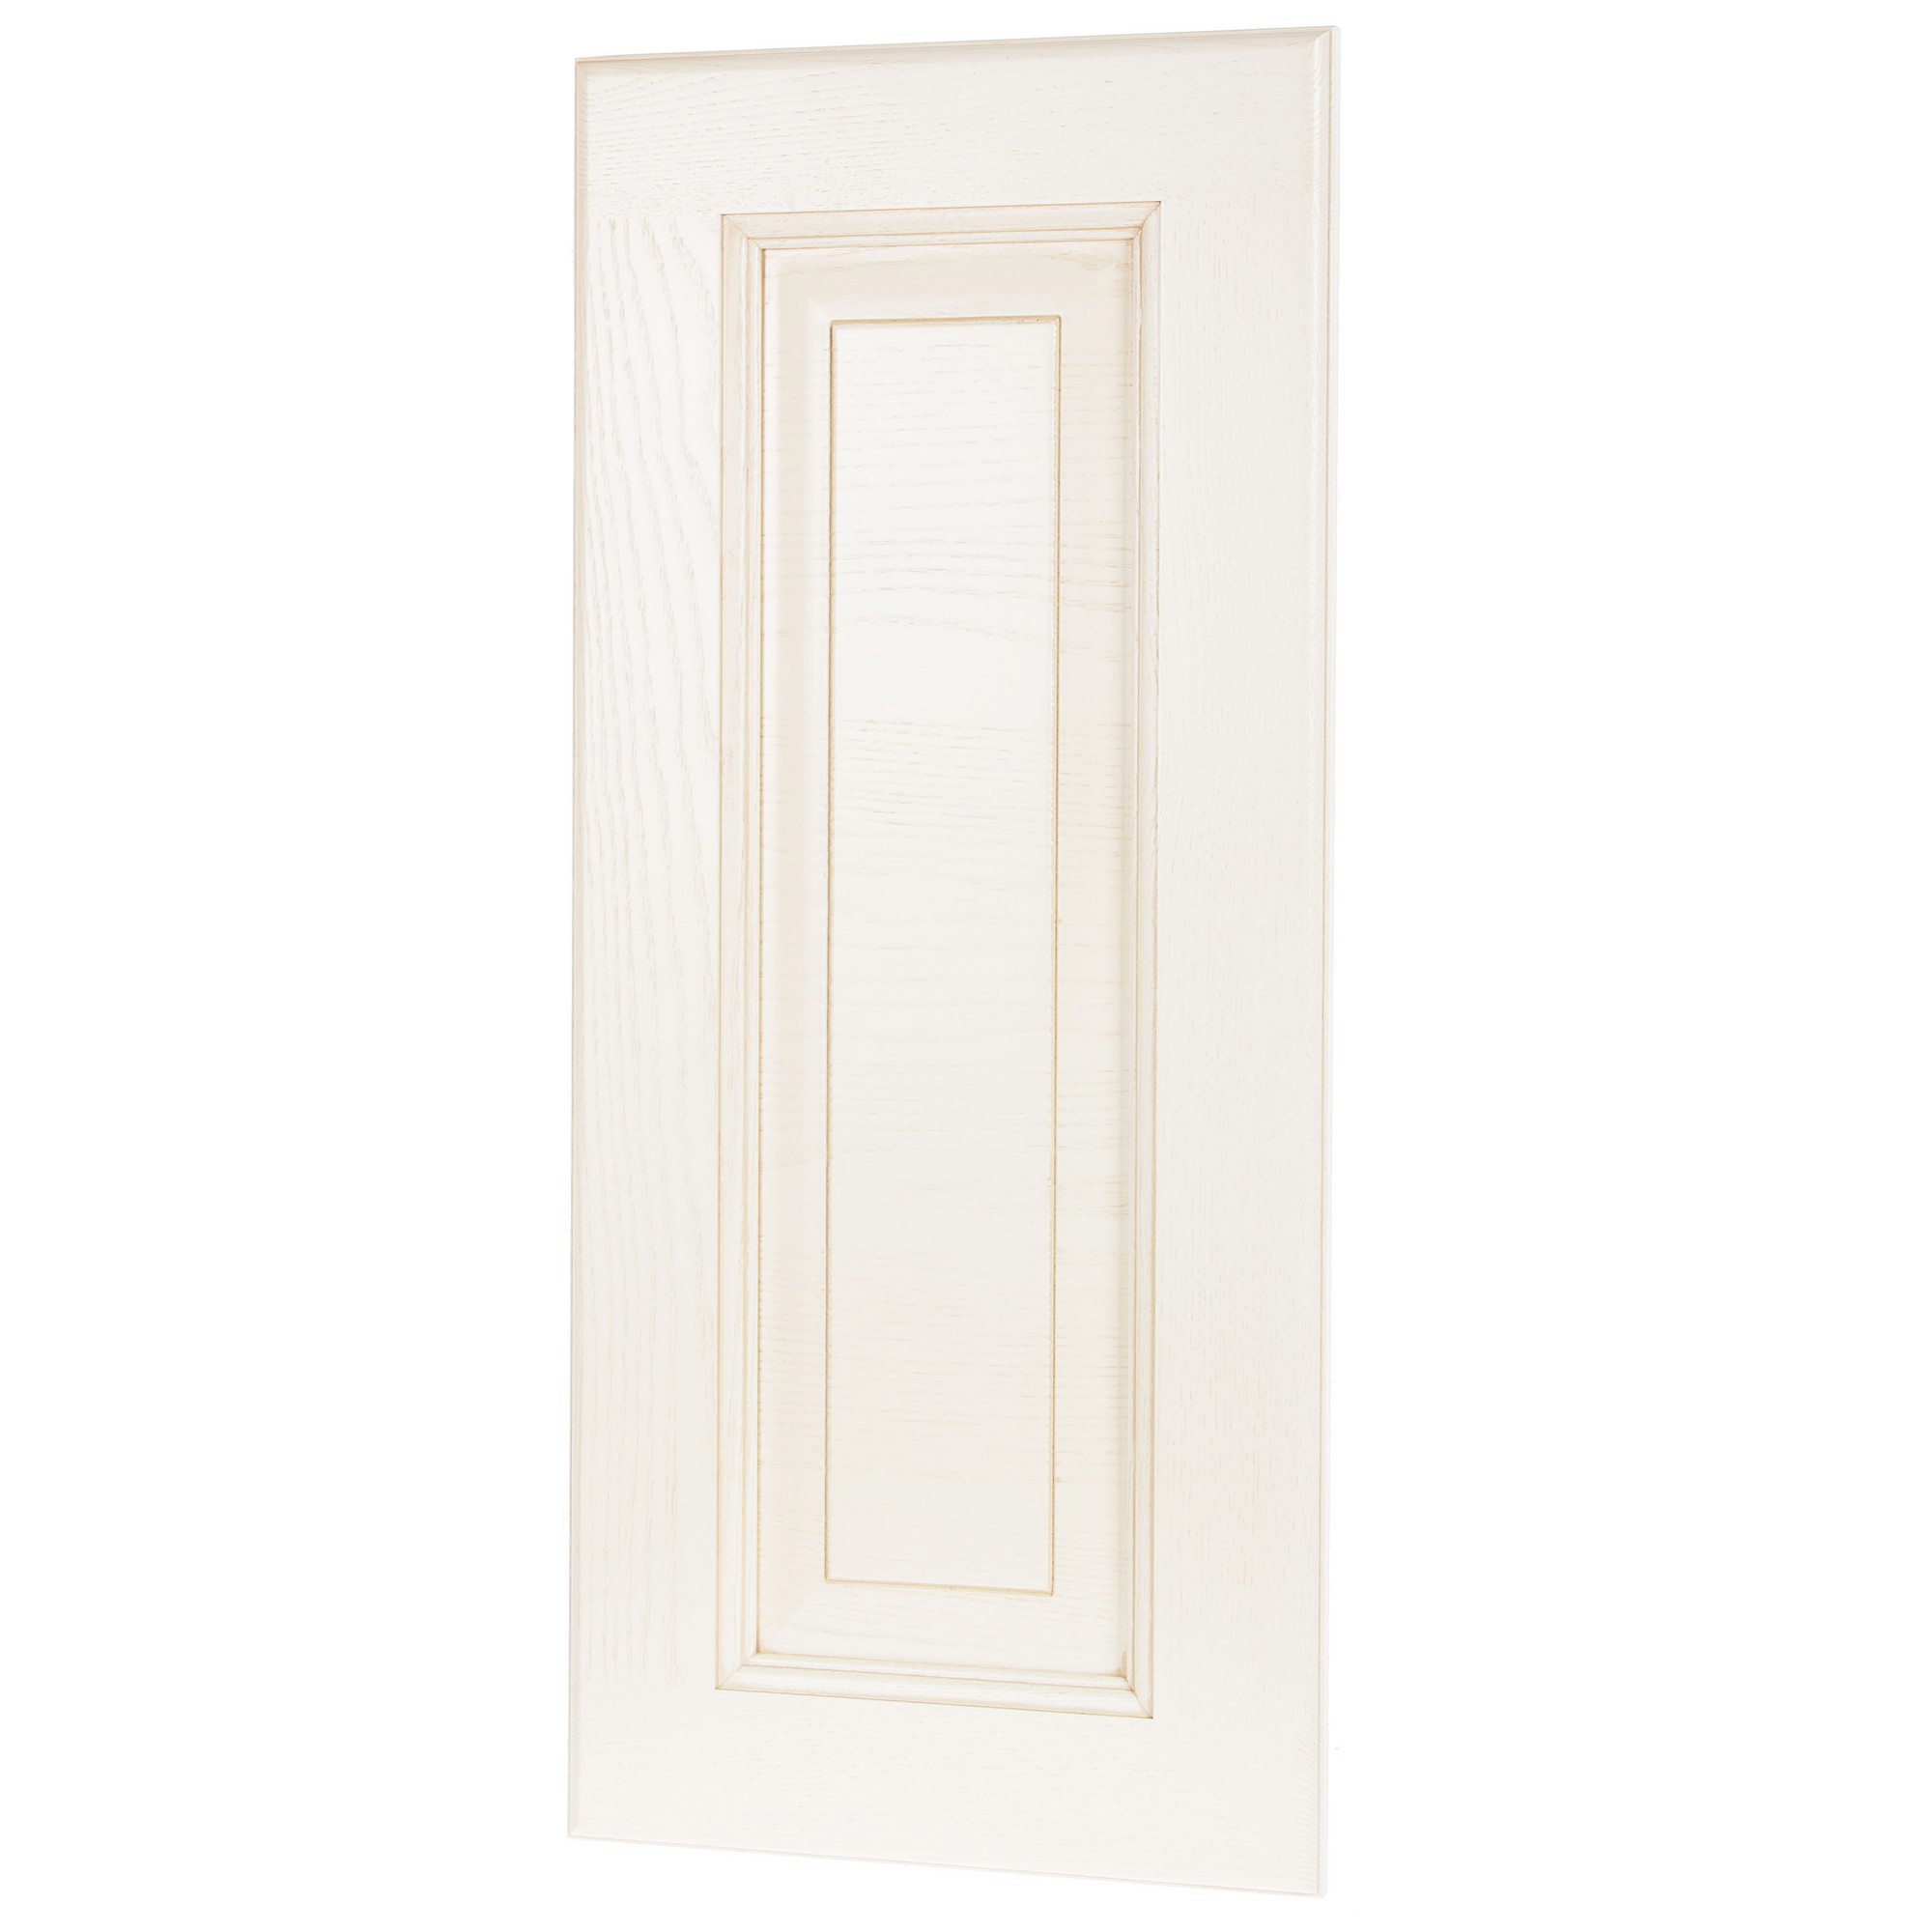 Дверь для шкафа Delinia ID «Невель» 40x103 см, массив ясеня, цвет кремовый